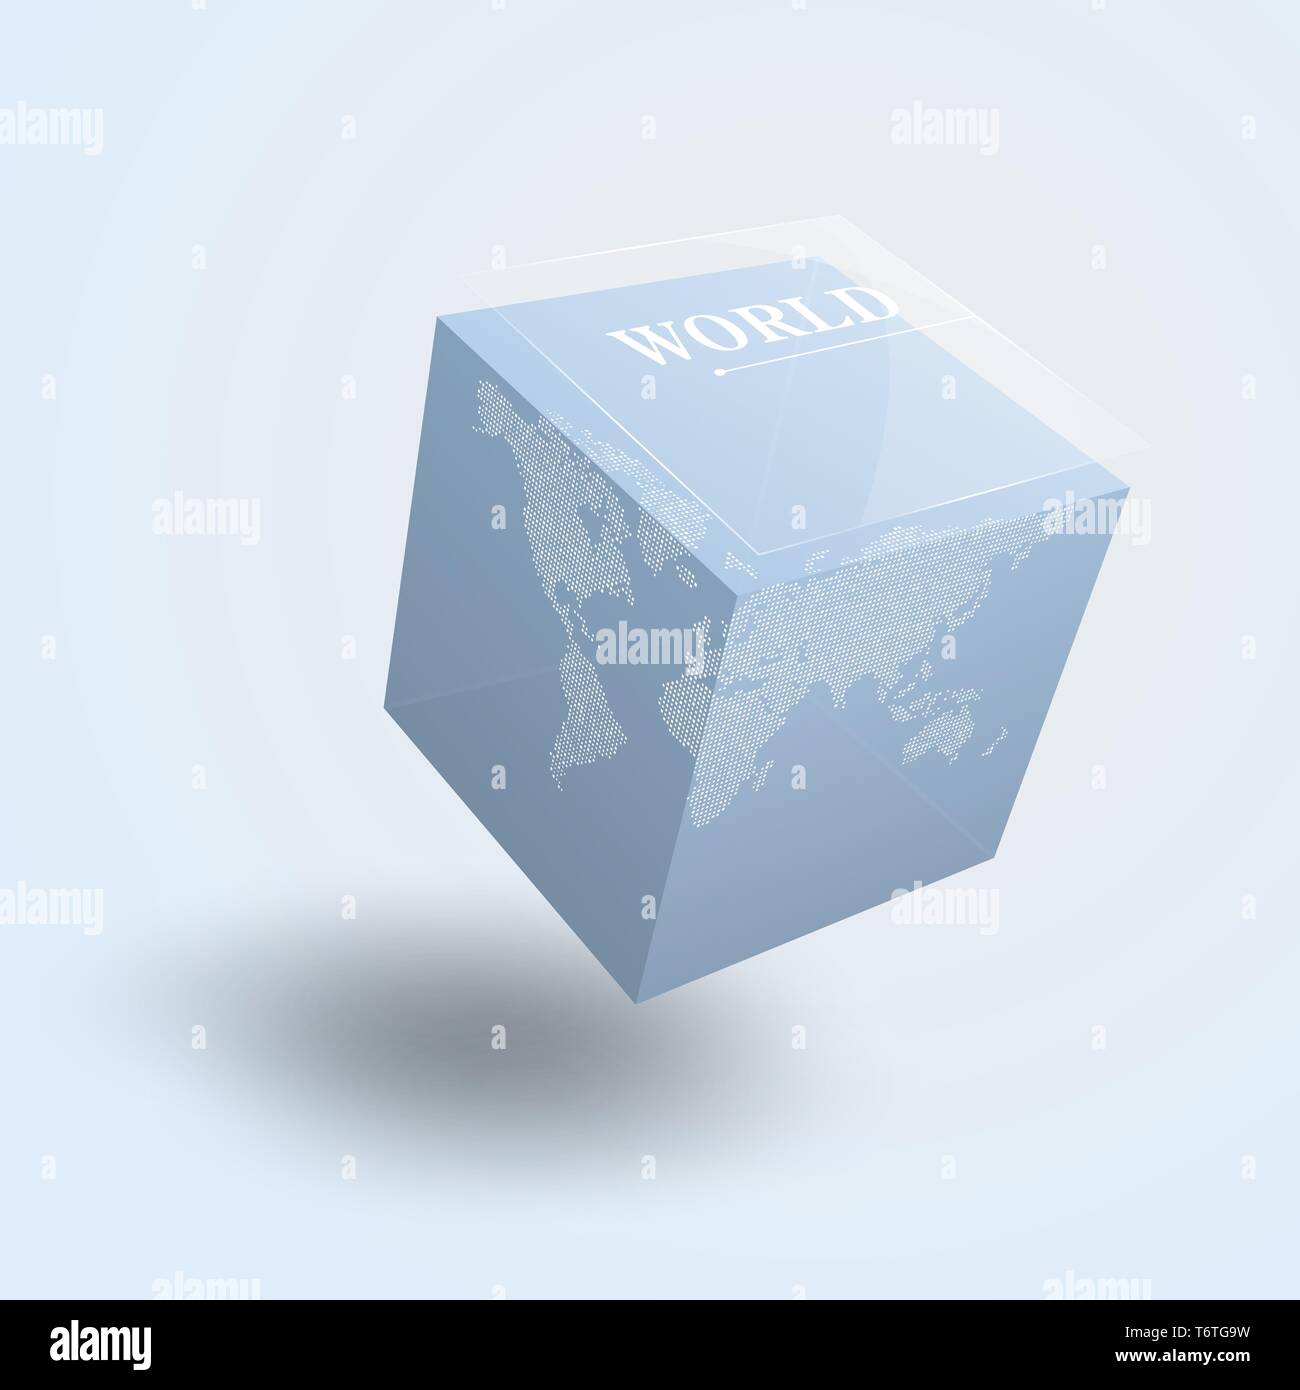 Weltkarte auf 3D-Würfel, transparent blau cubic Globus. Vector Illustration Vorlage für Bildung, Wissenschaft, Business Konzepte, Web Präsentationen. Stock Vektor